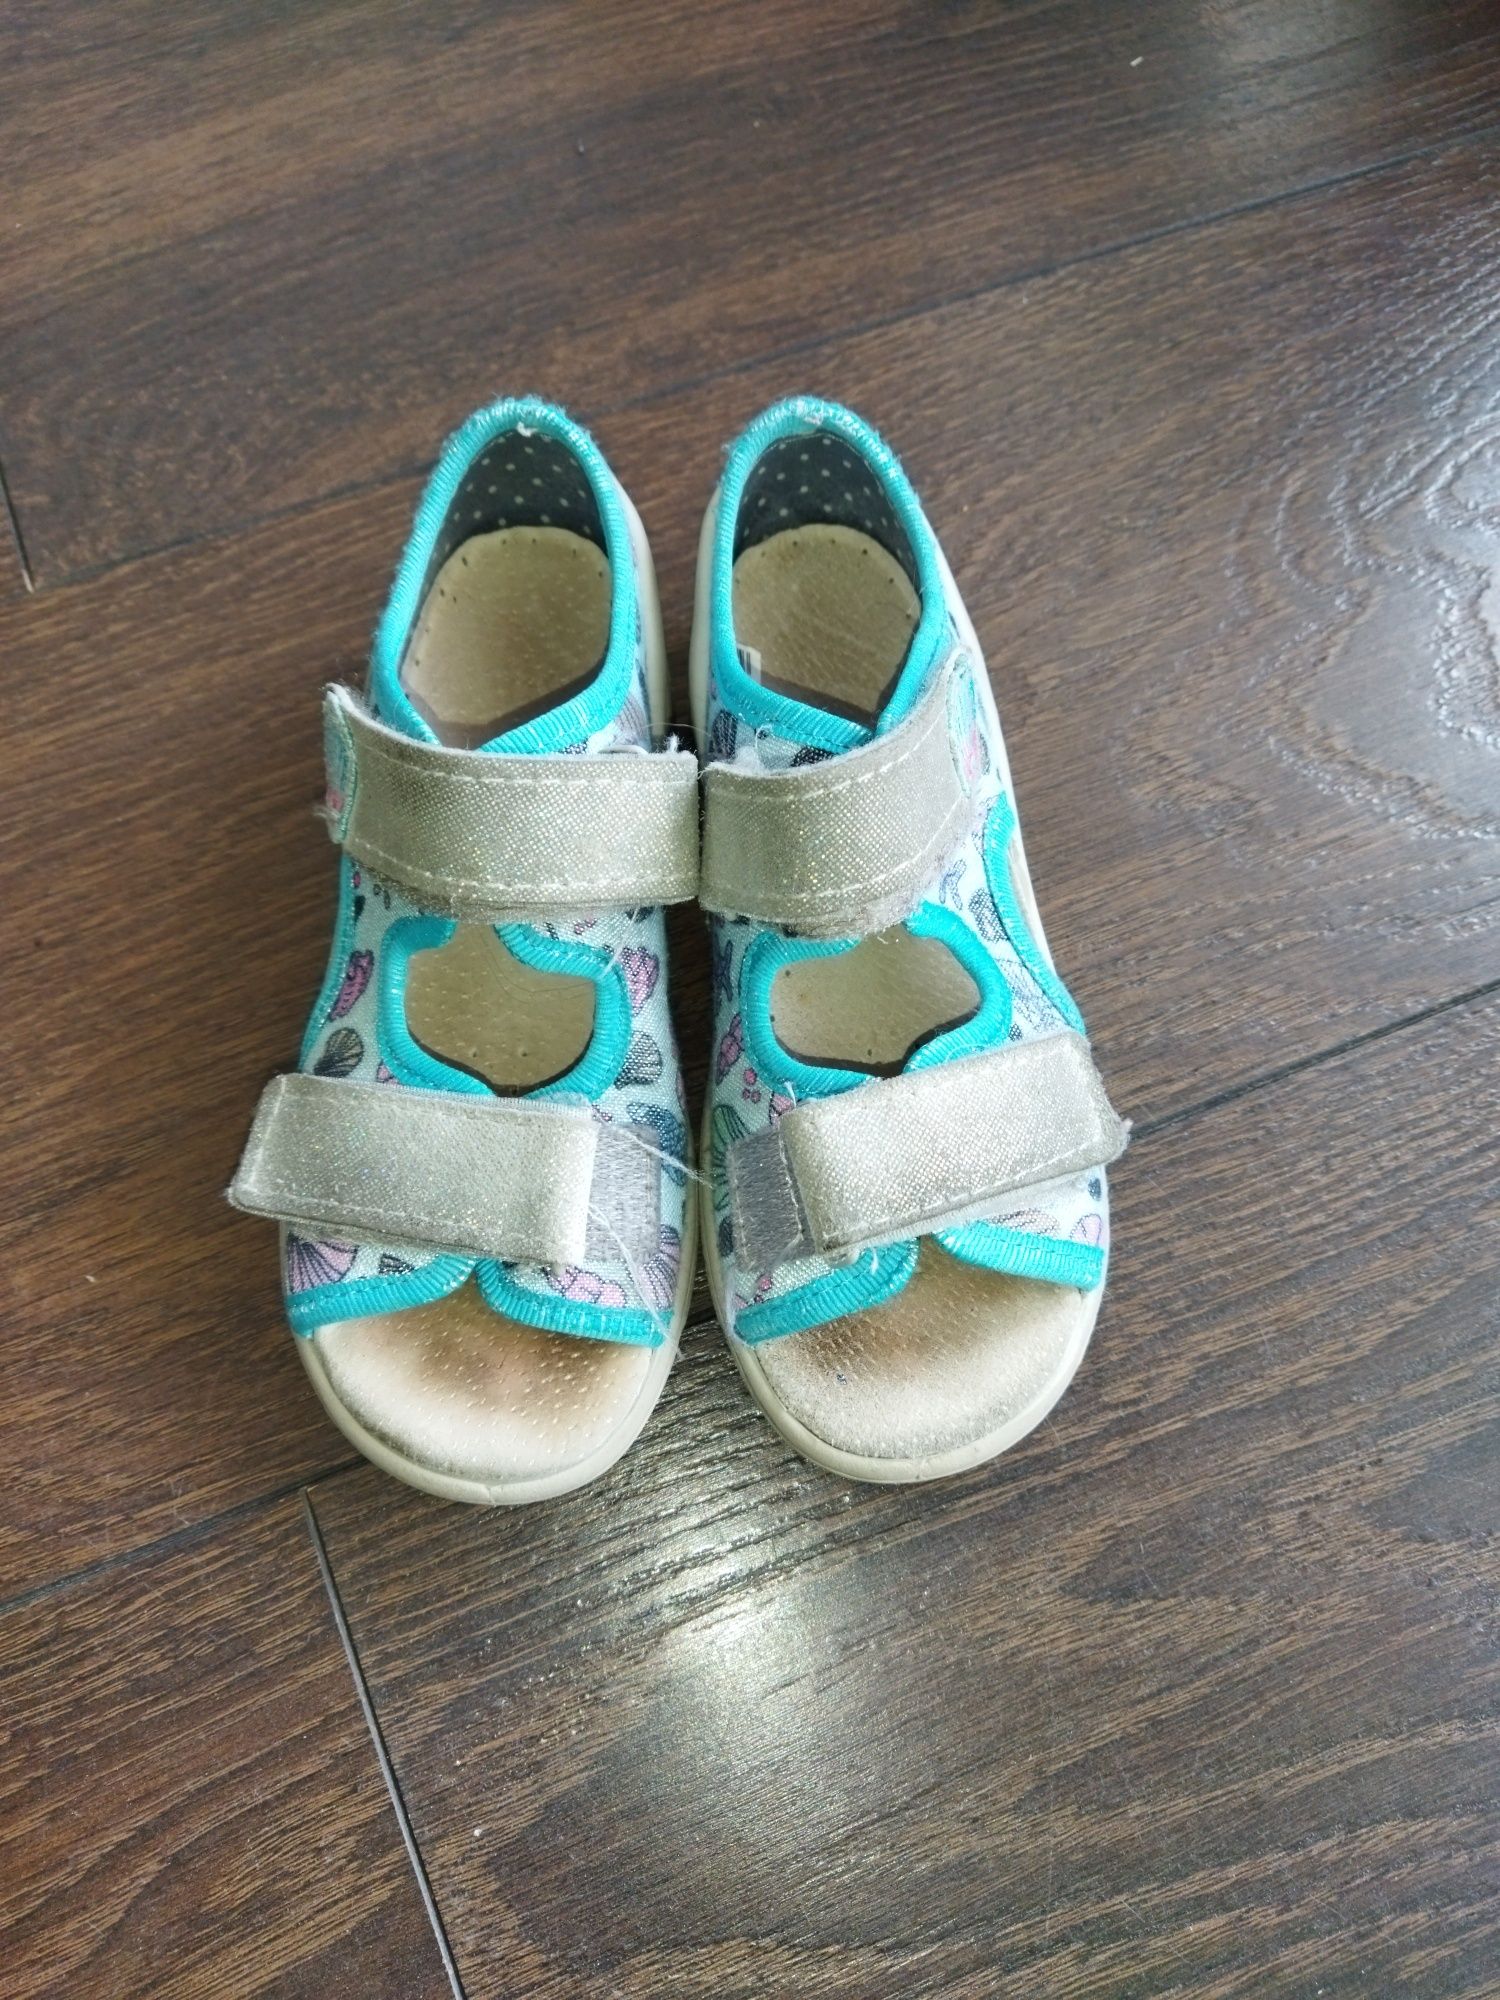 Sandały, sandałki dziecięce Befado 26